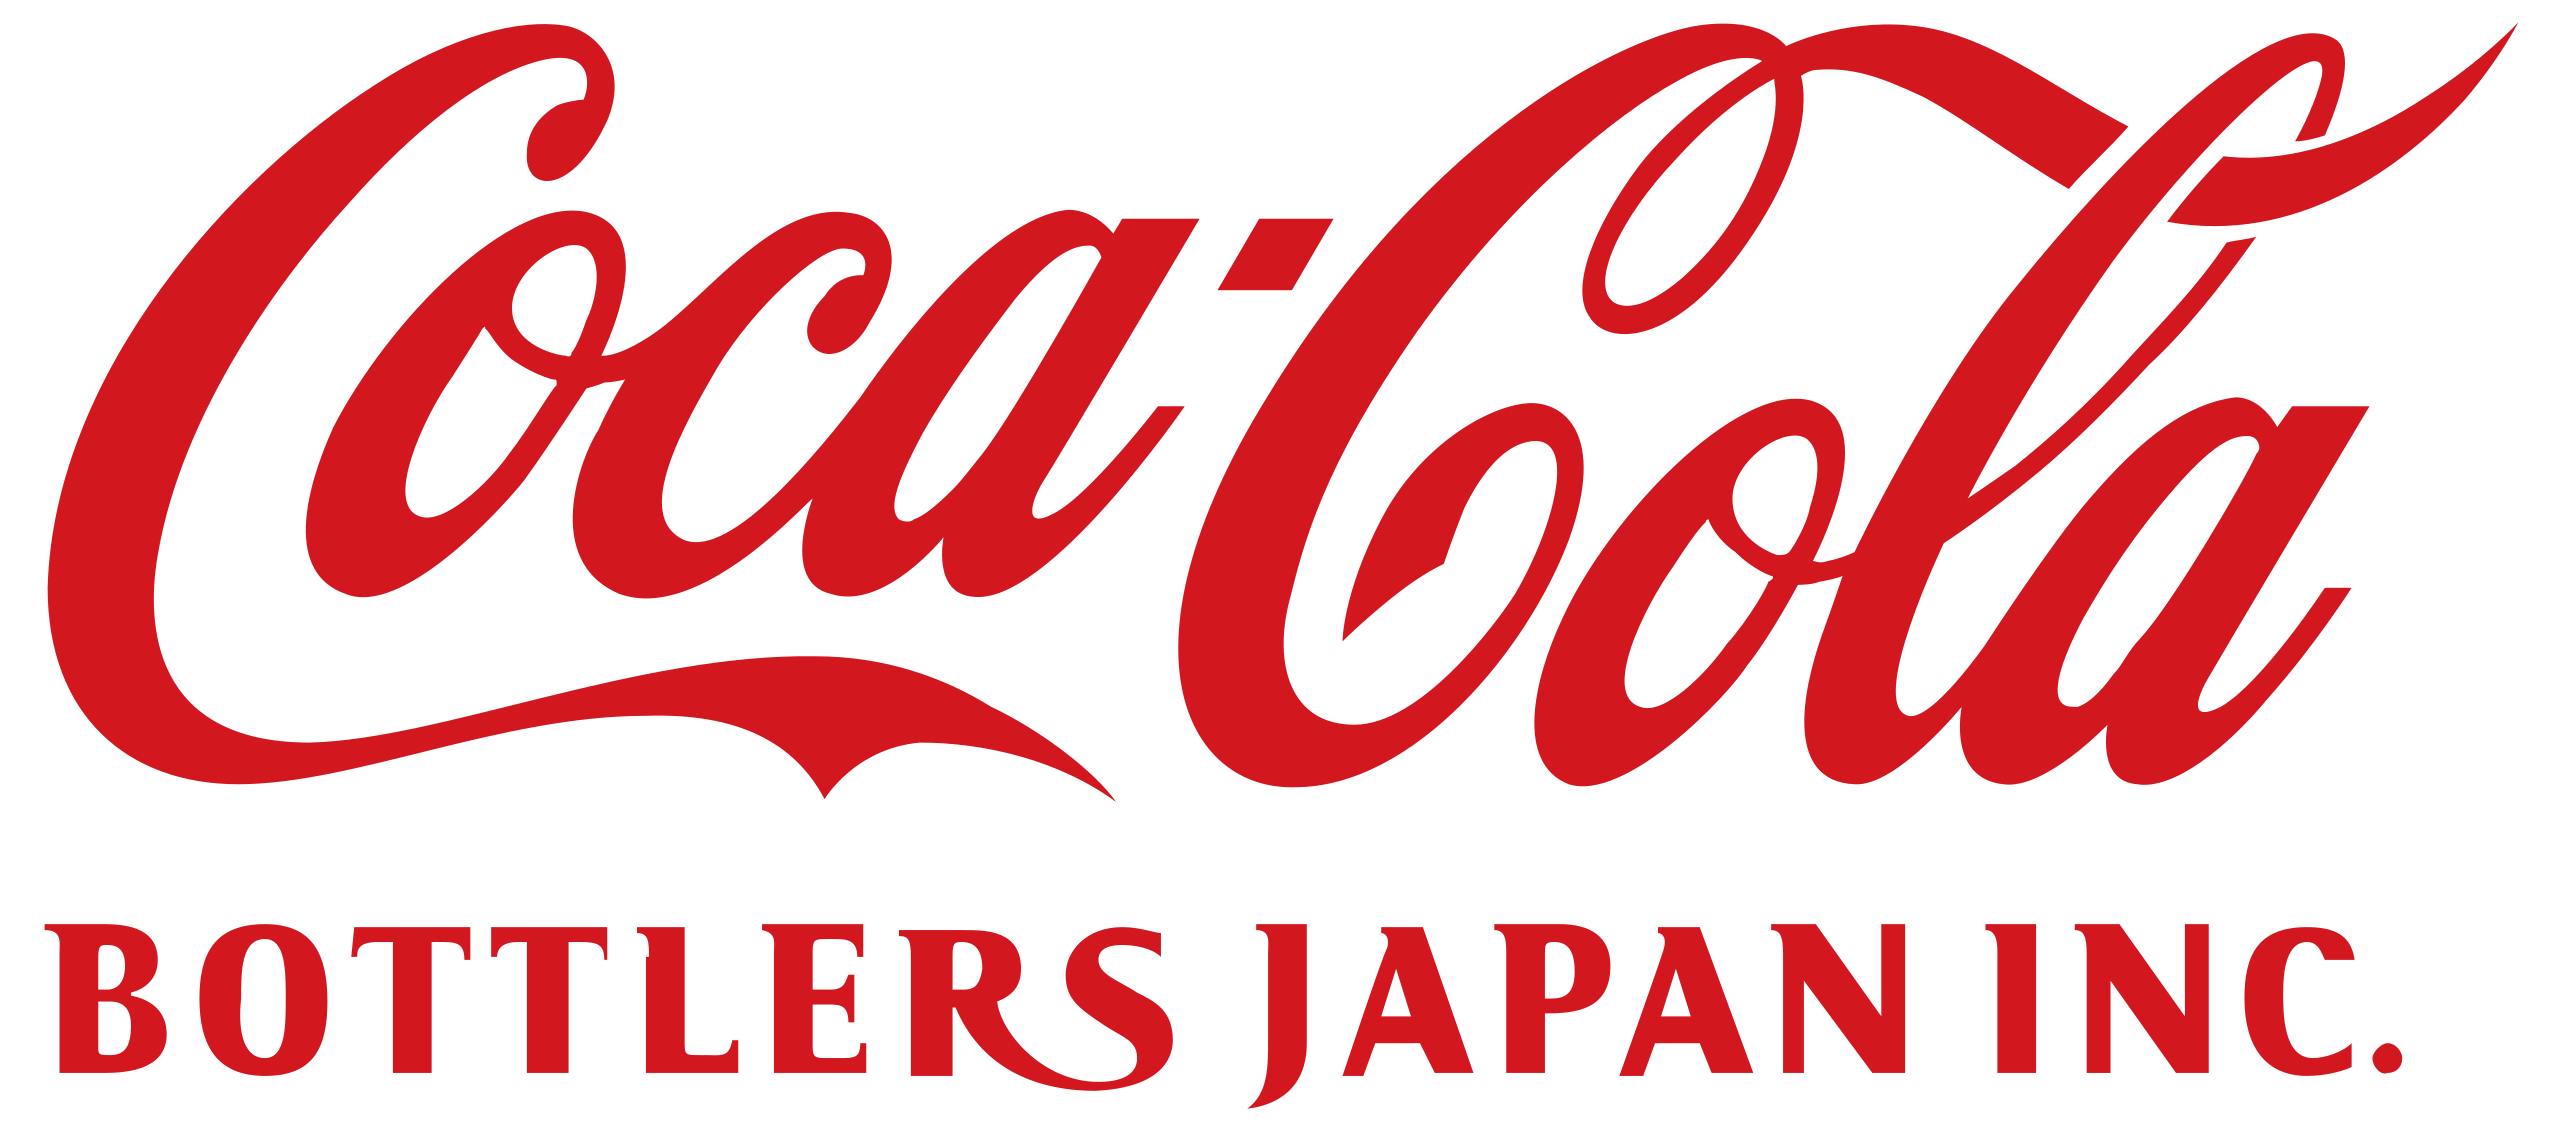 coca-cola bottlers japan logo